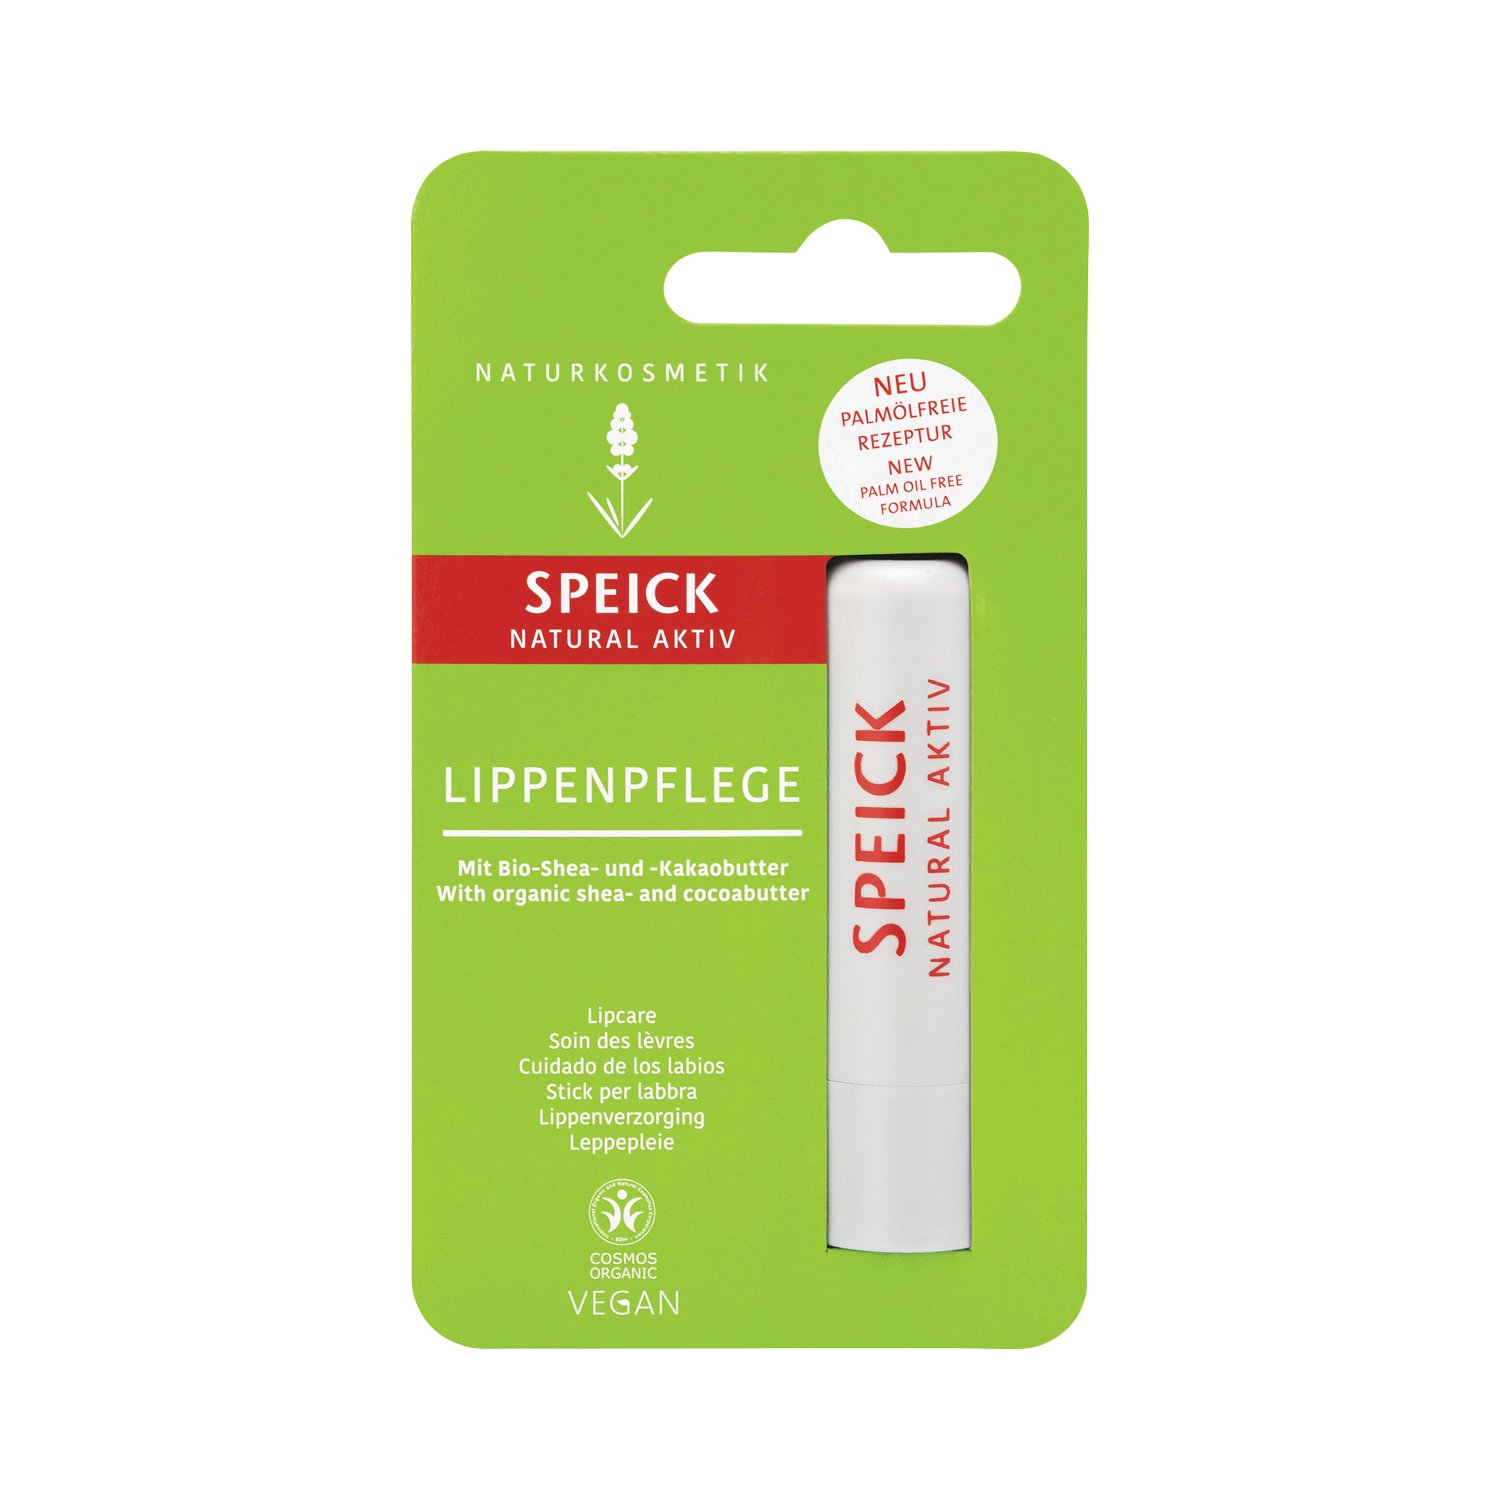 Speick - Natural Aktiv - Lippenpflege